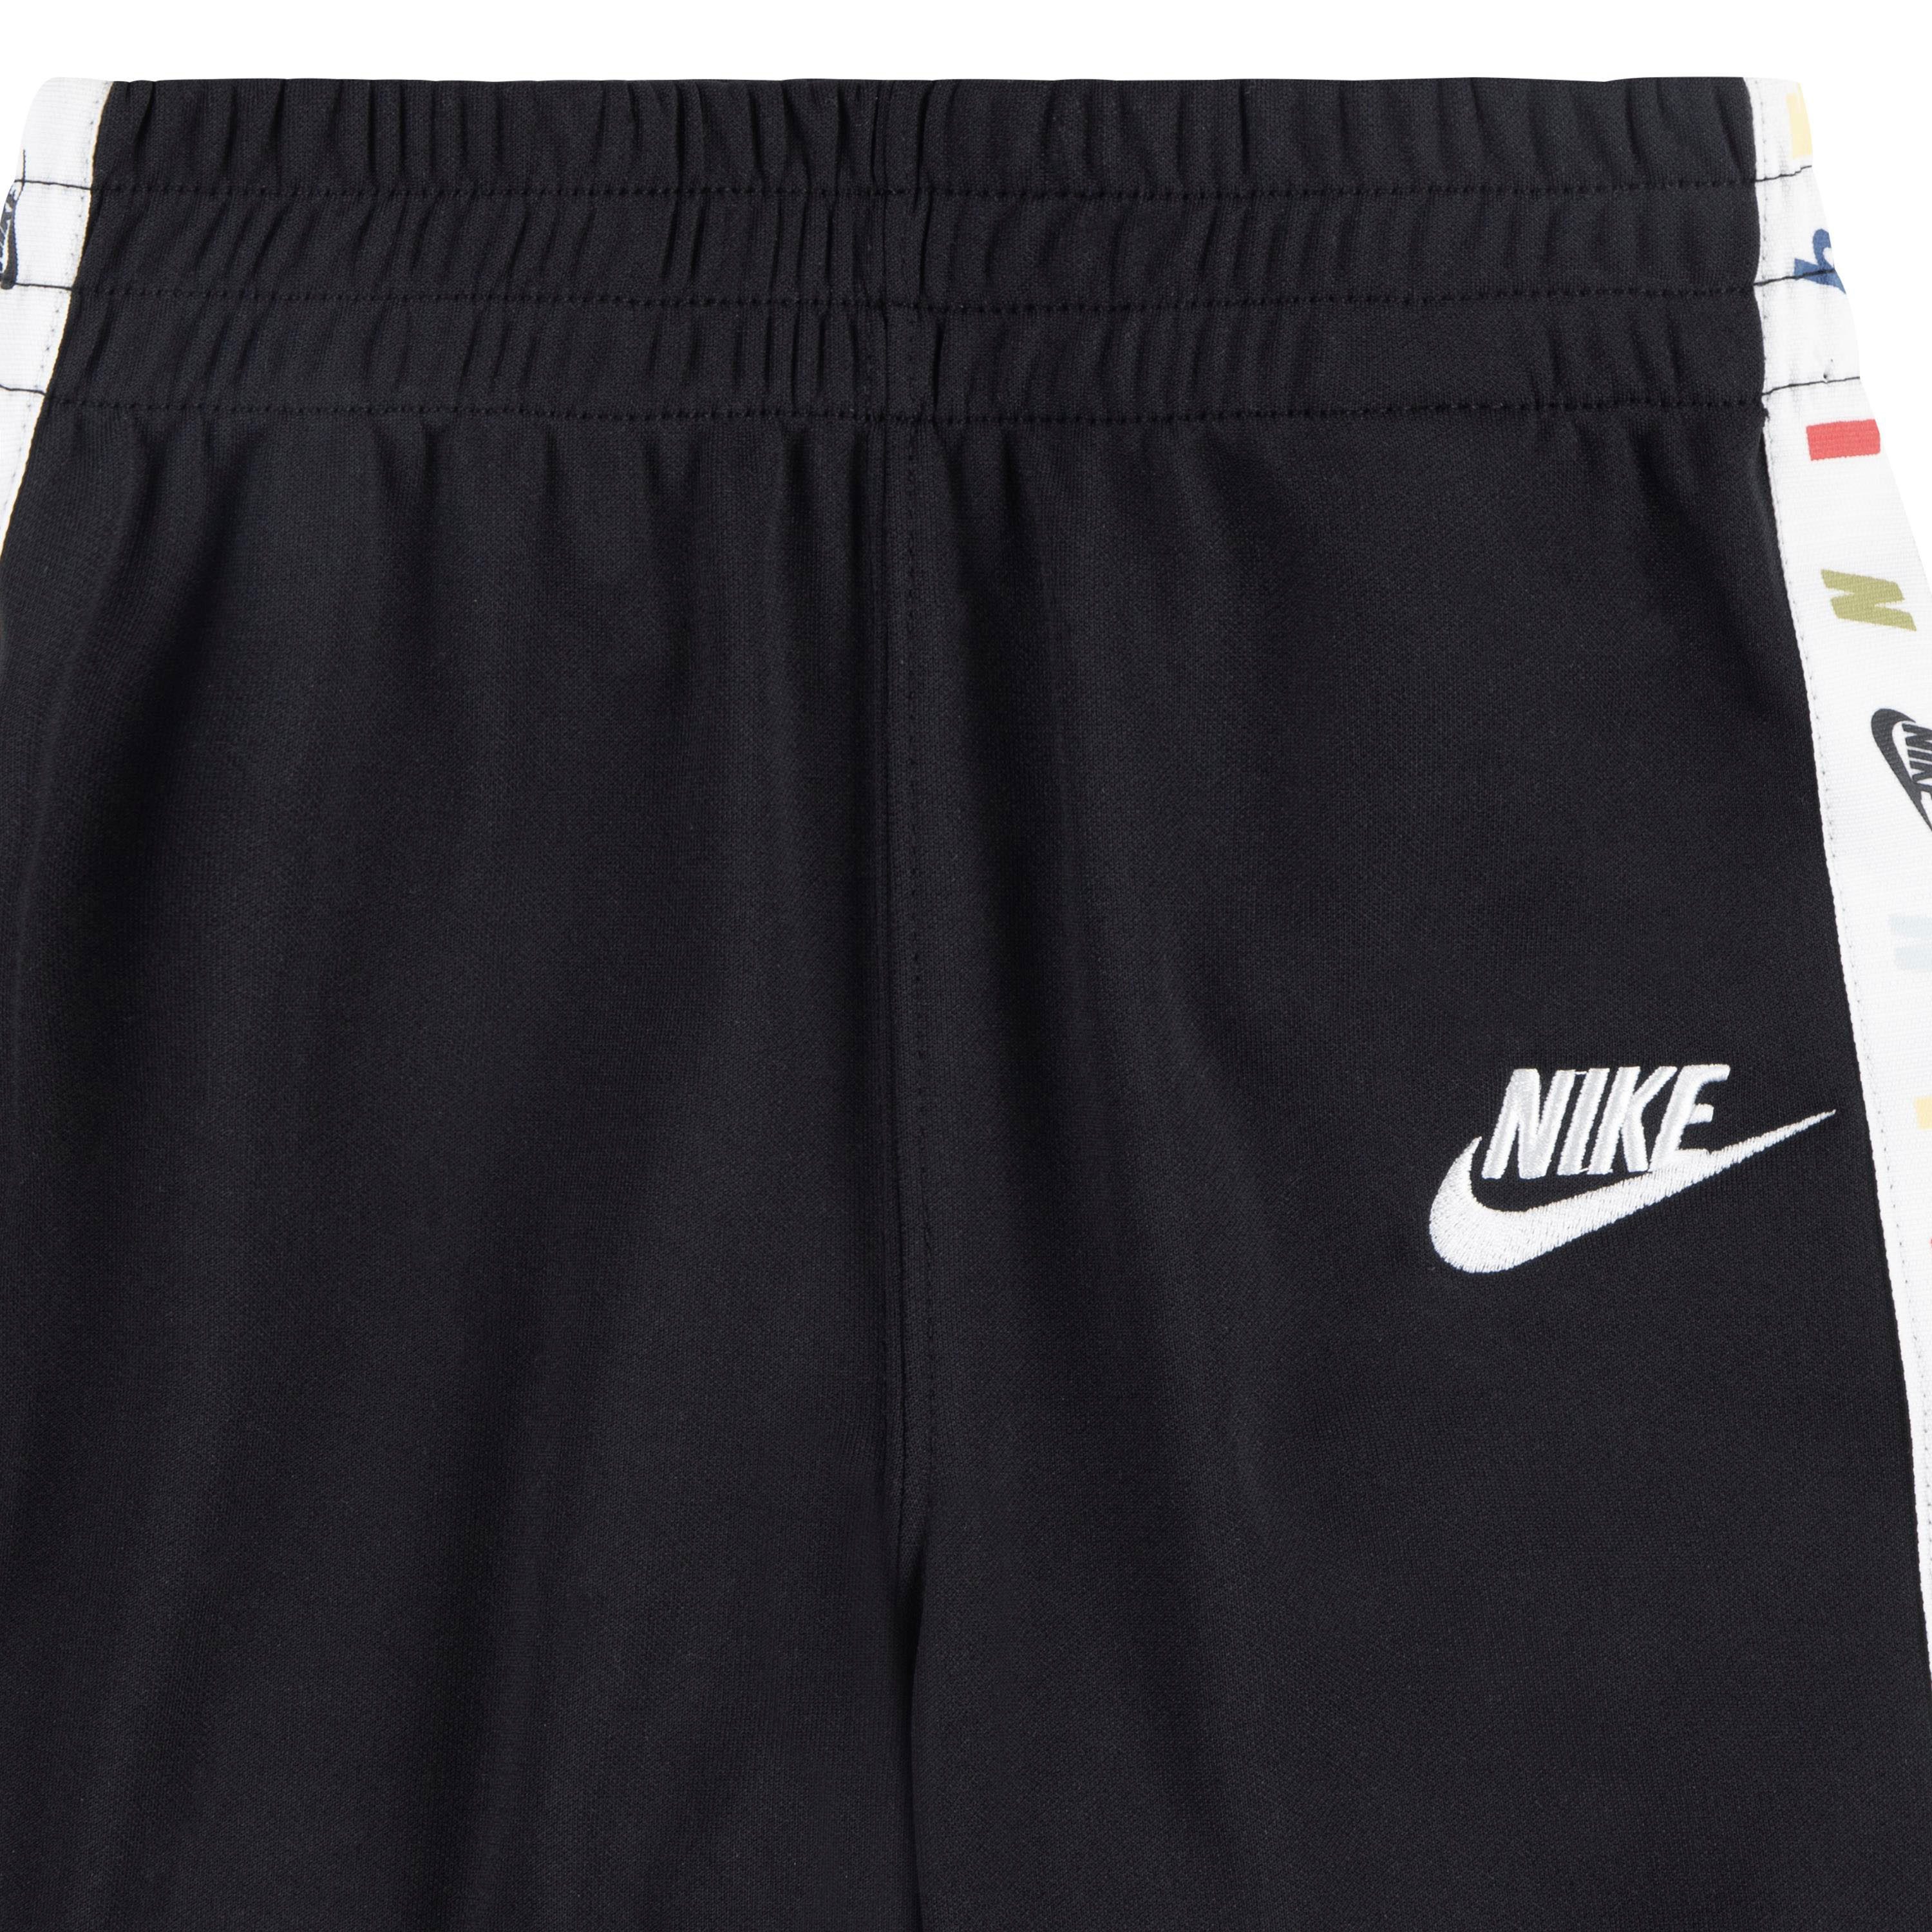 Nike Sportswear Joggingpak (set 2-delig)